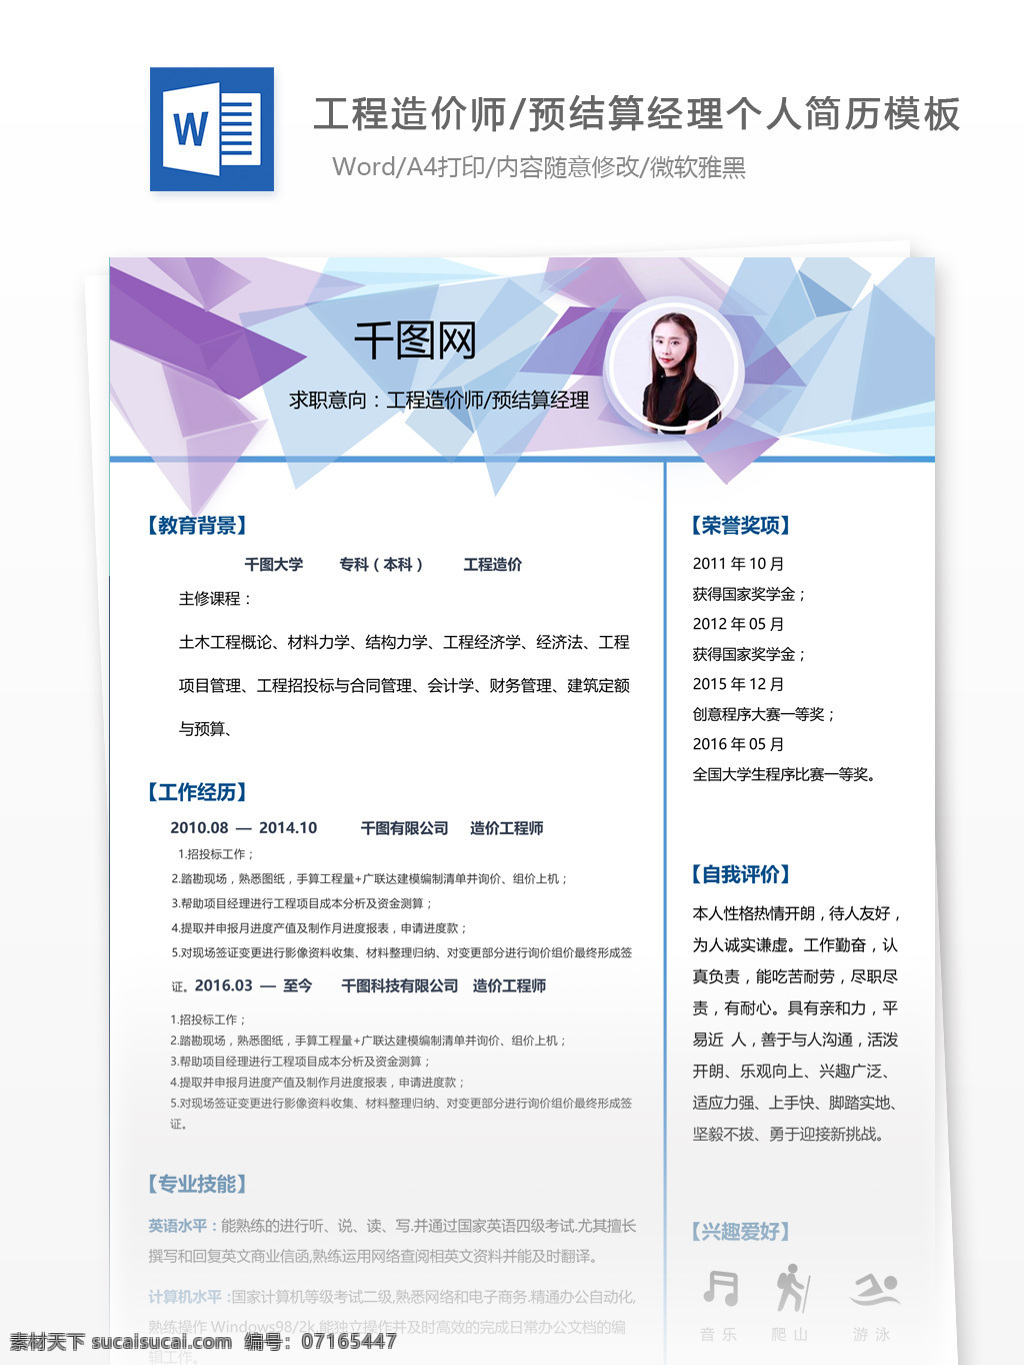 刘建辉 工程 造价师 预 结算 经理 个人简历 模板 简历 简历模板 13年